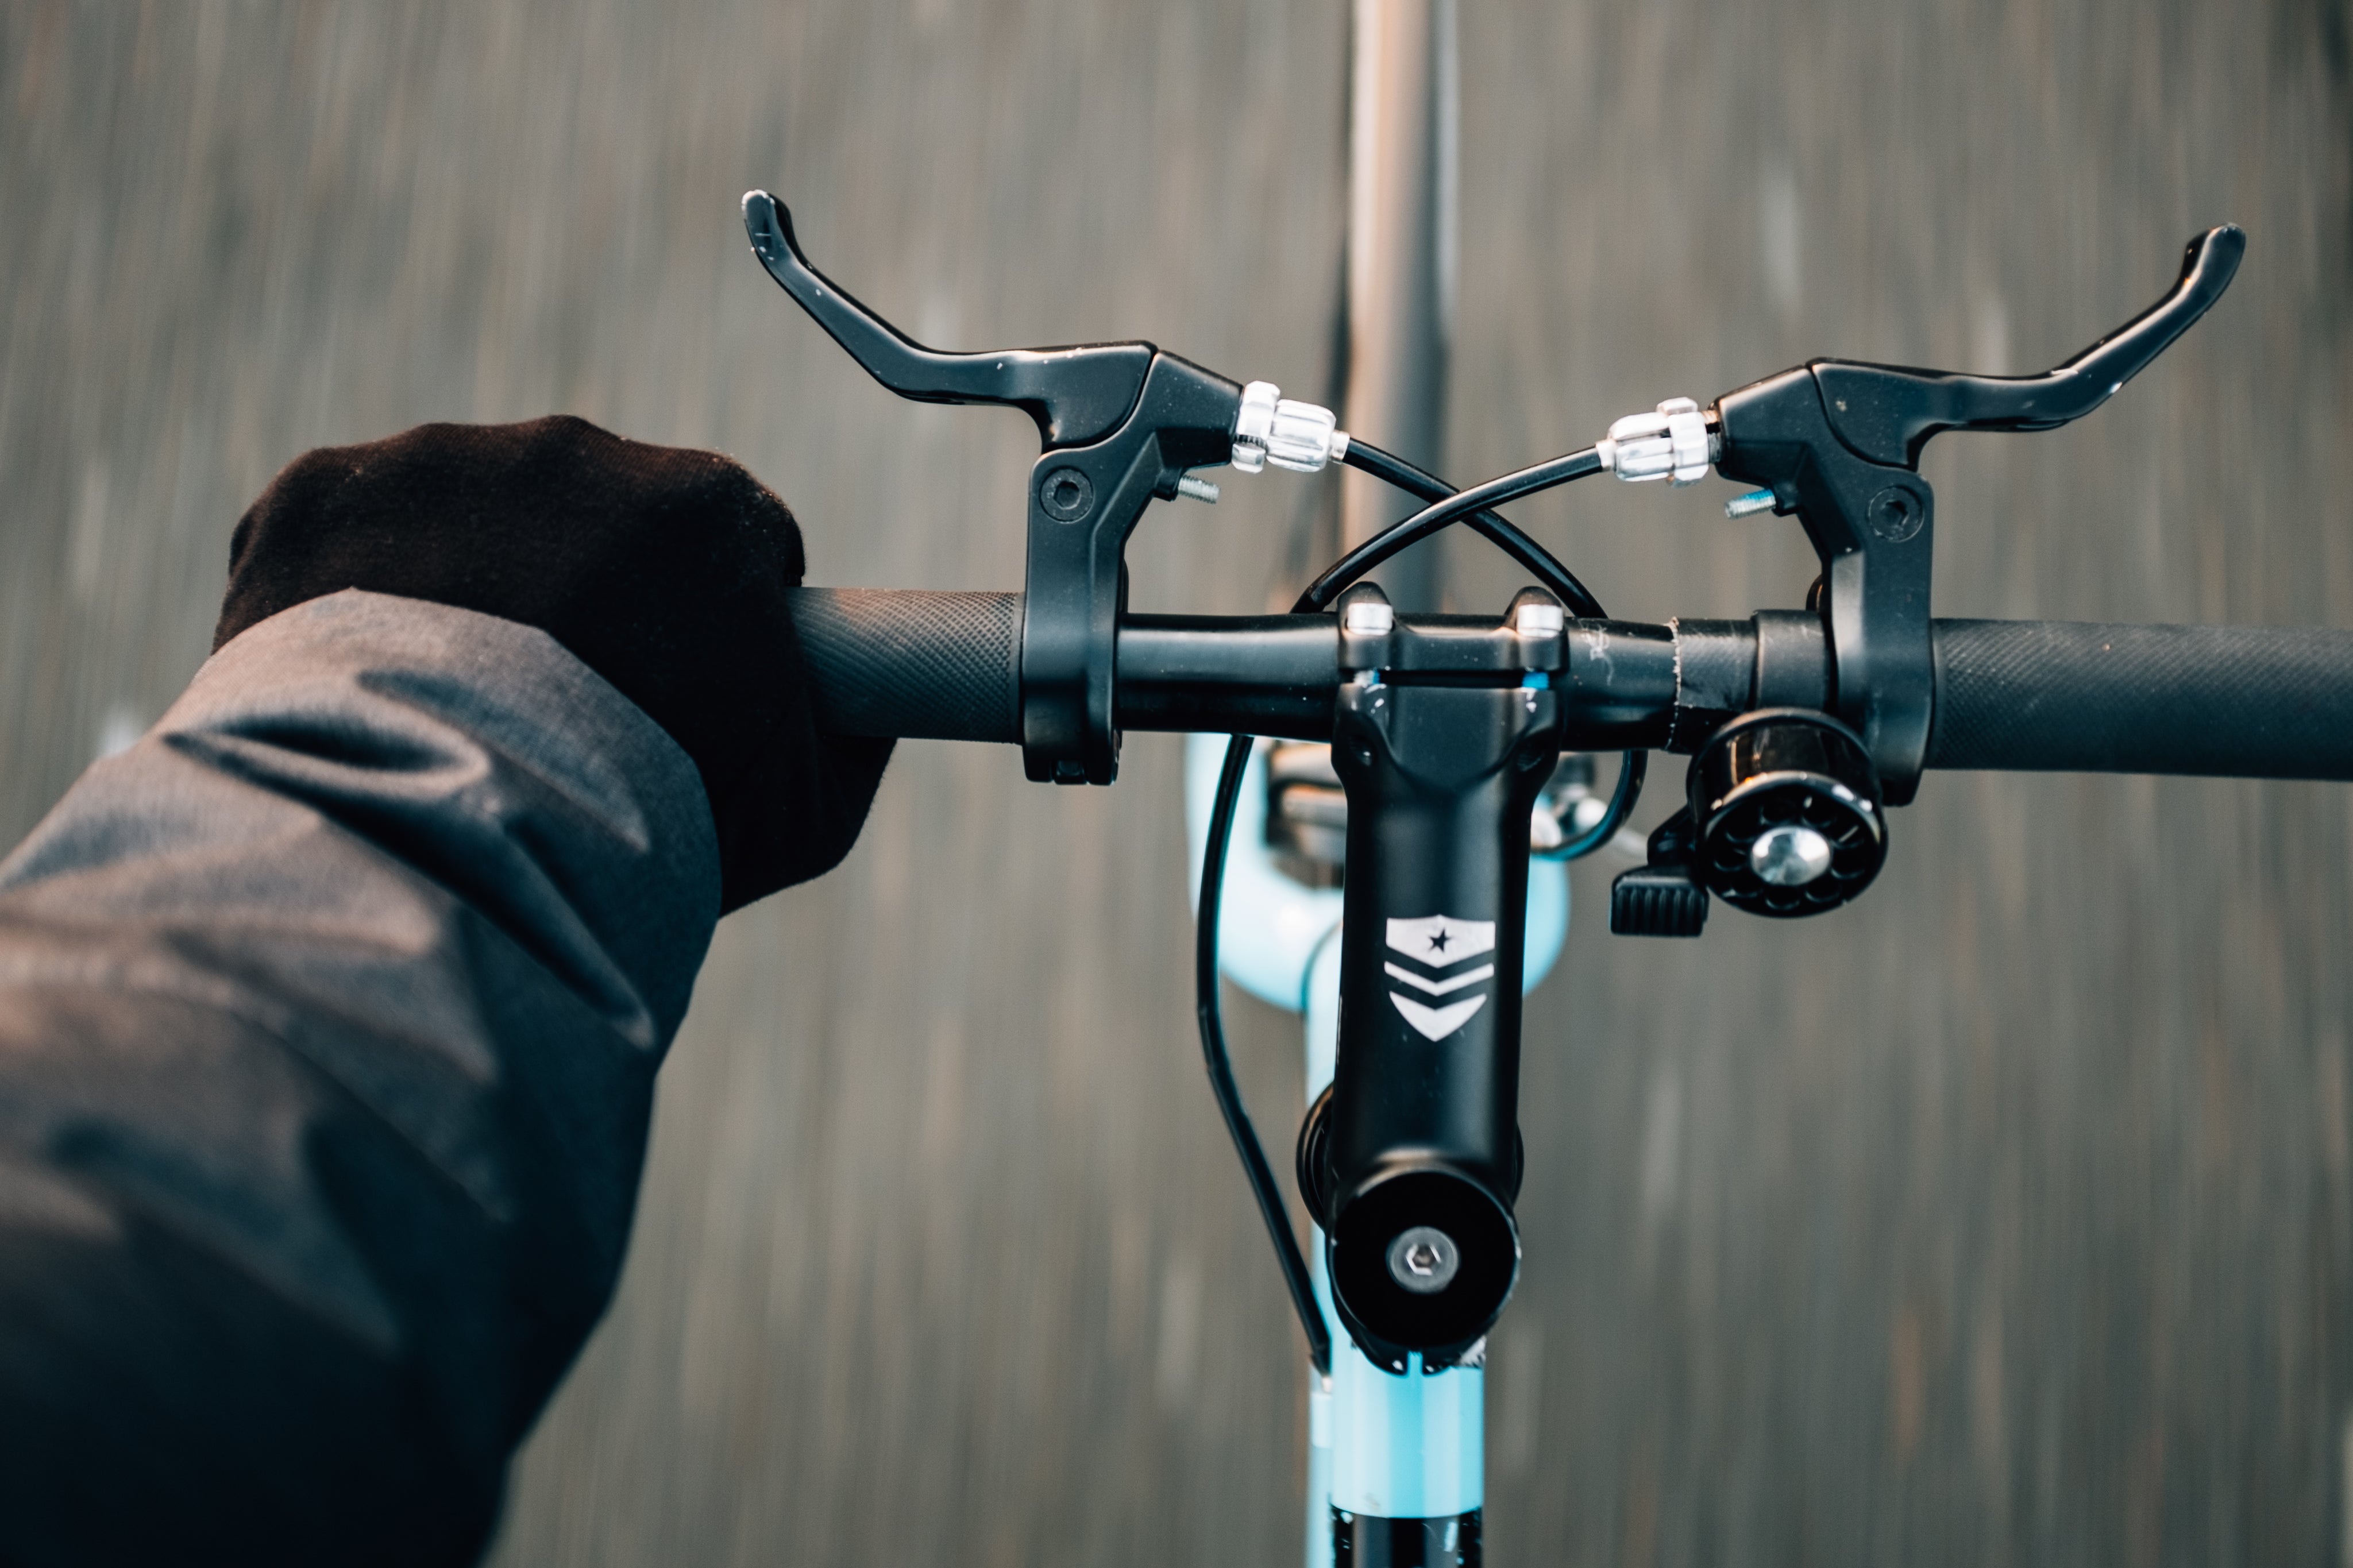 bike-brakes-and-gloves.jpg